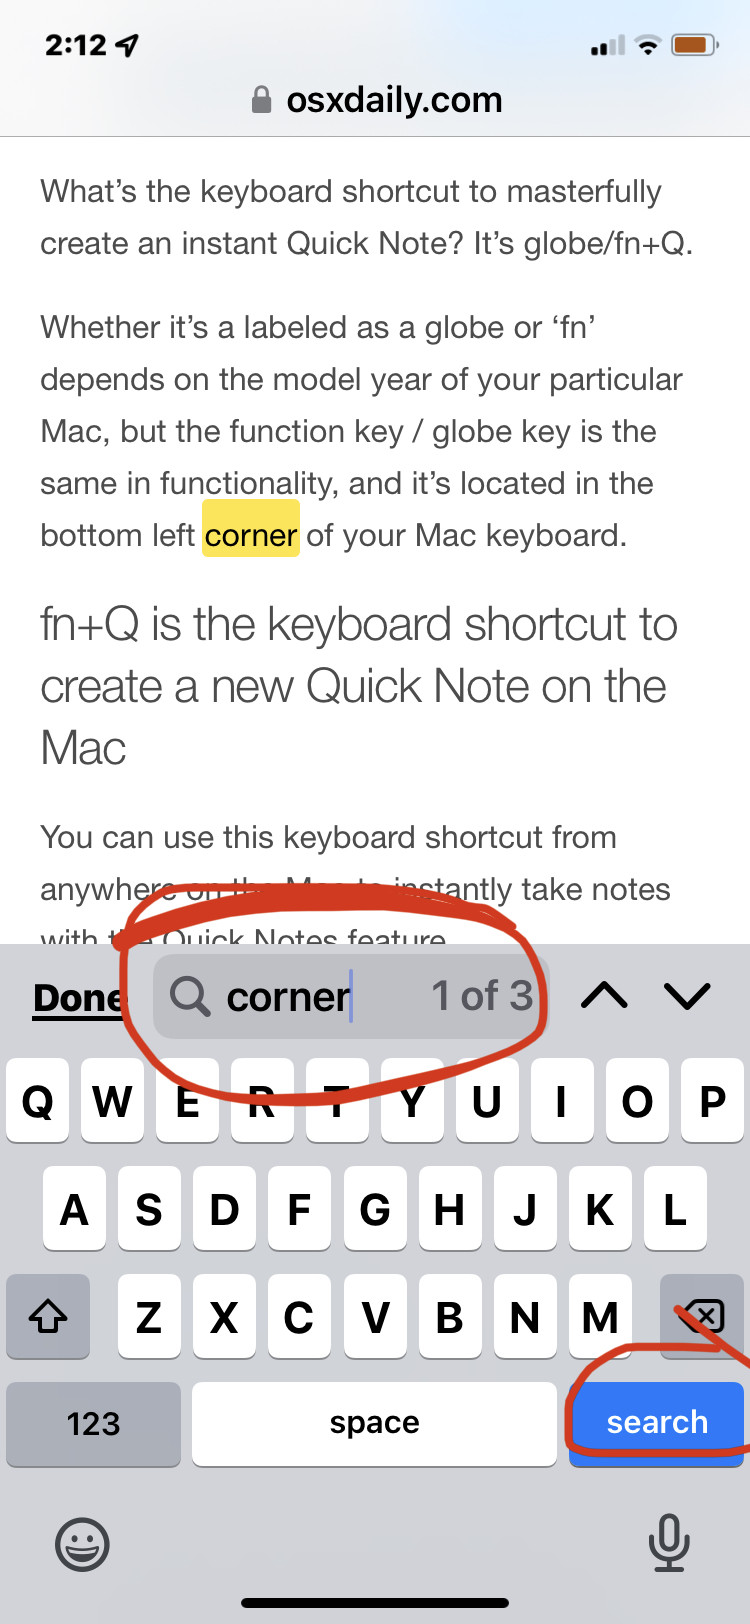 使用控制 F相当于在 iPhone 的页面上查找匹配的文本